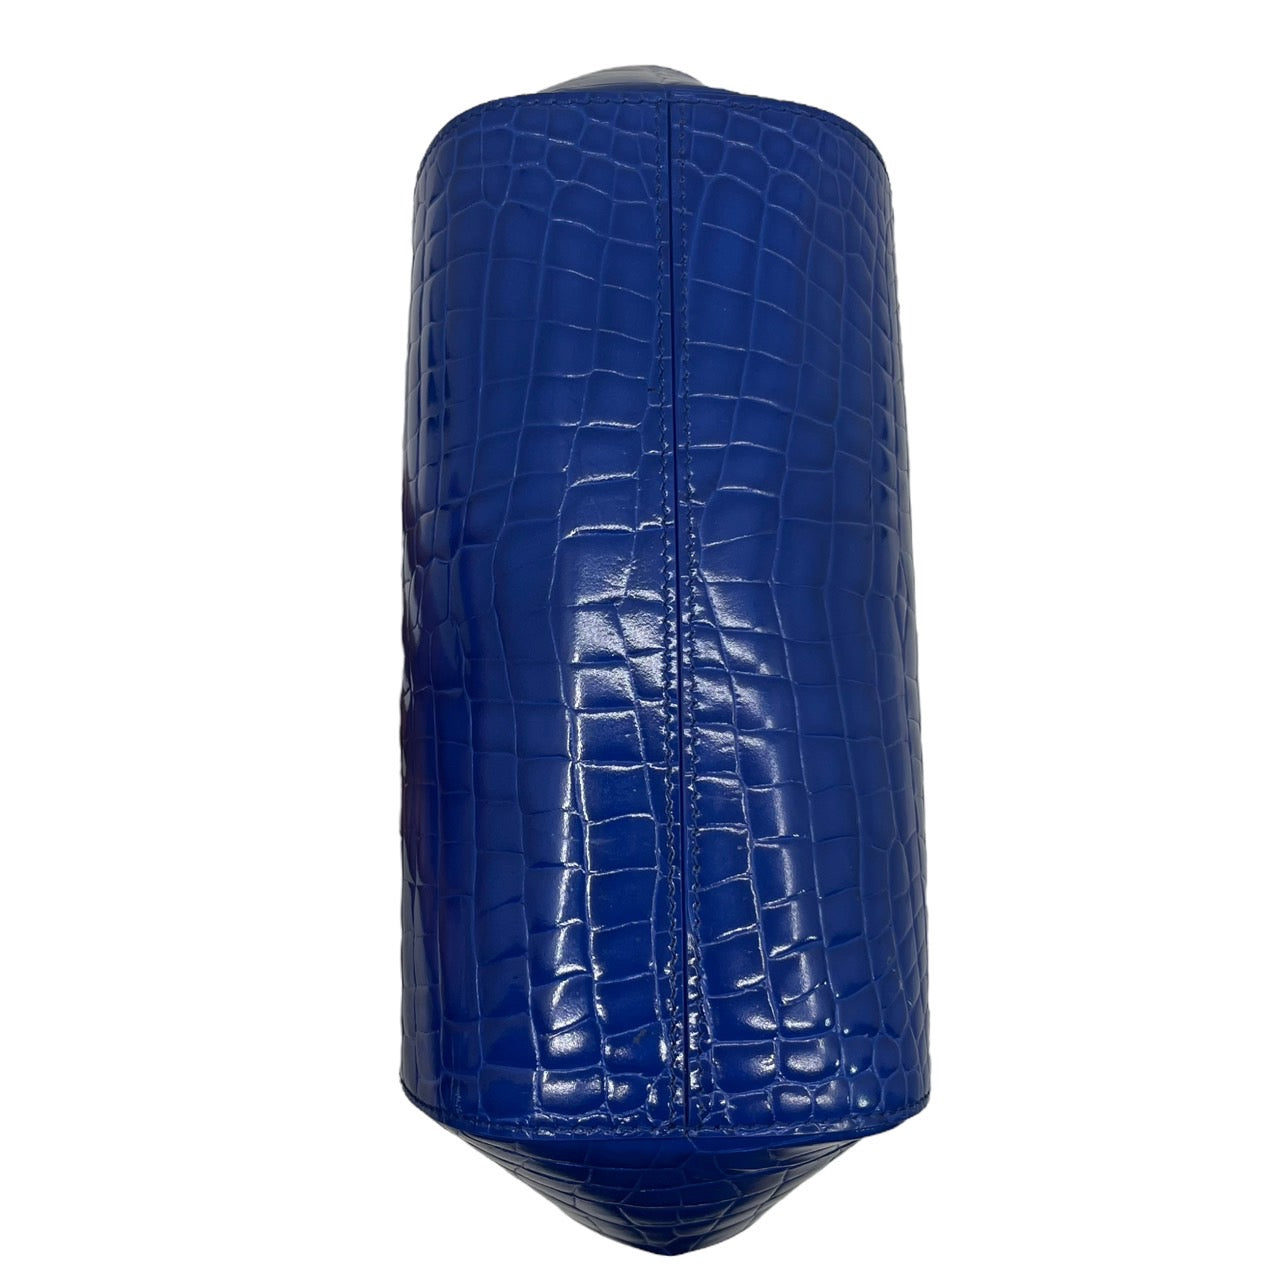 MAISON MARGIELA(メゾンマルジェラ) One-shoulder bag with embossed  pouch/がま口型押しワンショルダーバッグバッグ S36WD0153 ブルー×ゴールド